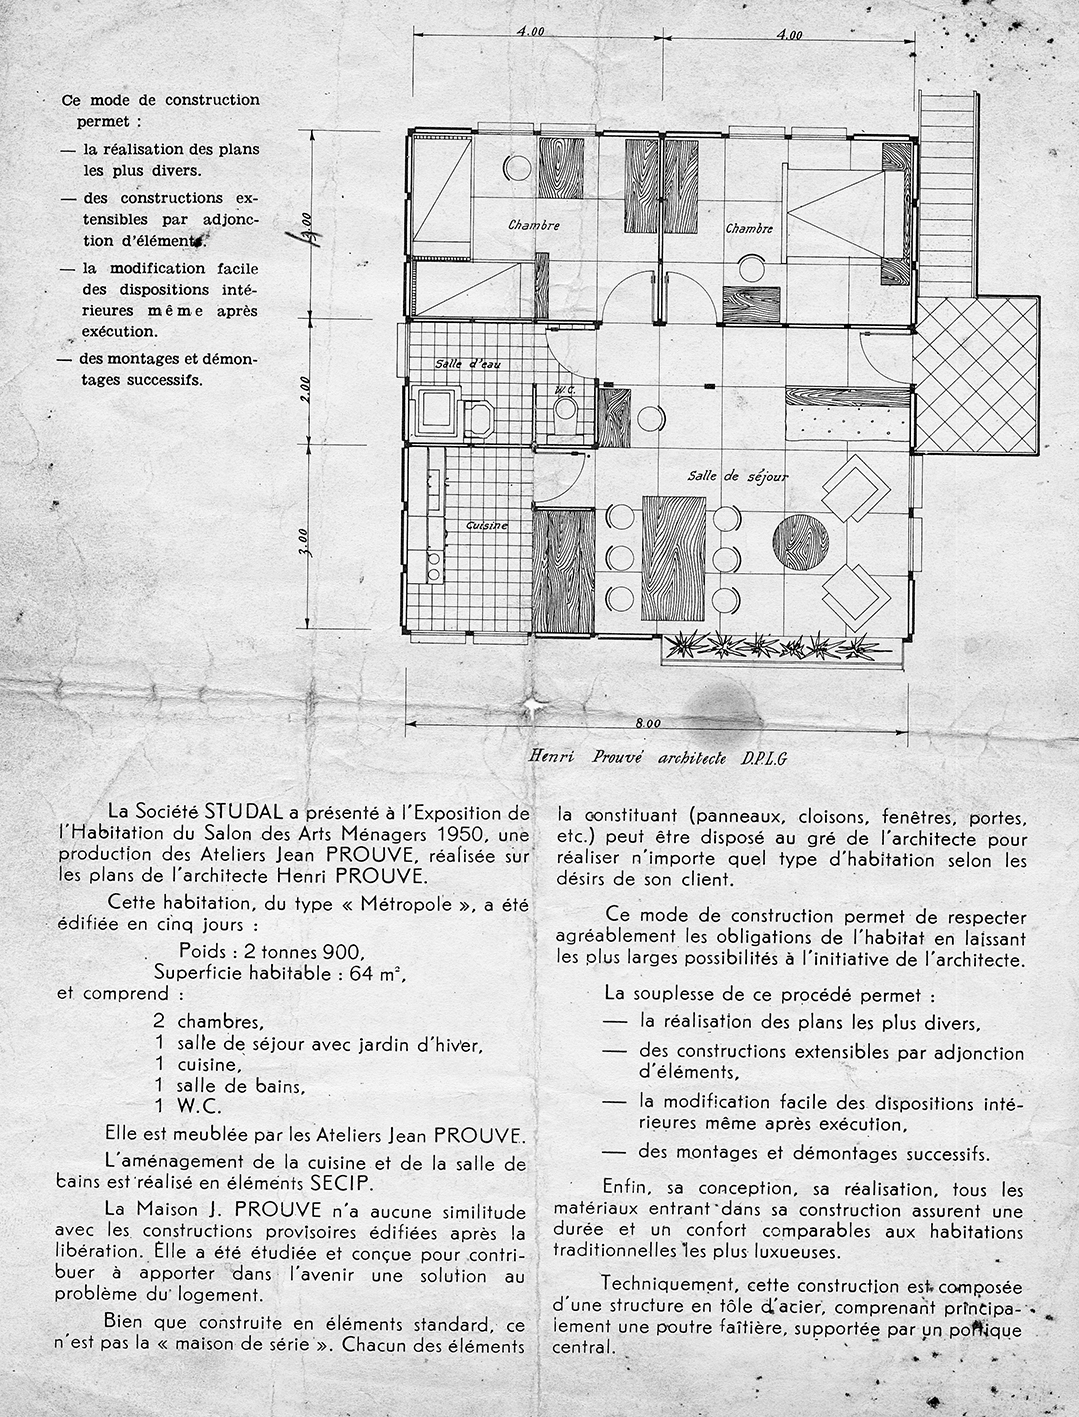 « La maison Prouvé ». Brochure publicitaire pour les Ateliers Jean Prouvé, Studal, Paris, c. 1950.